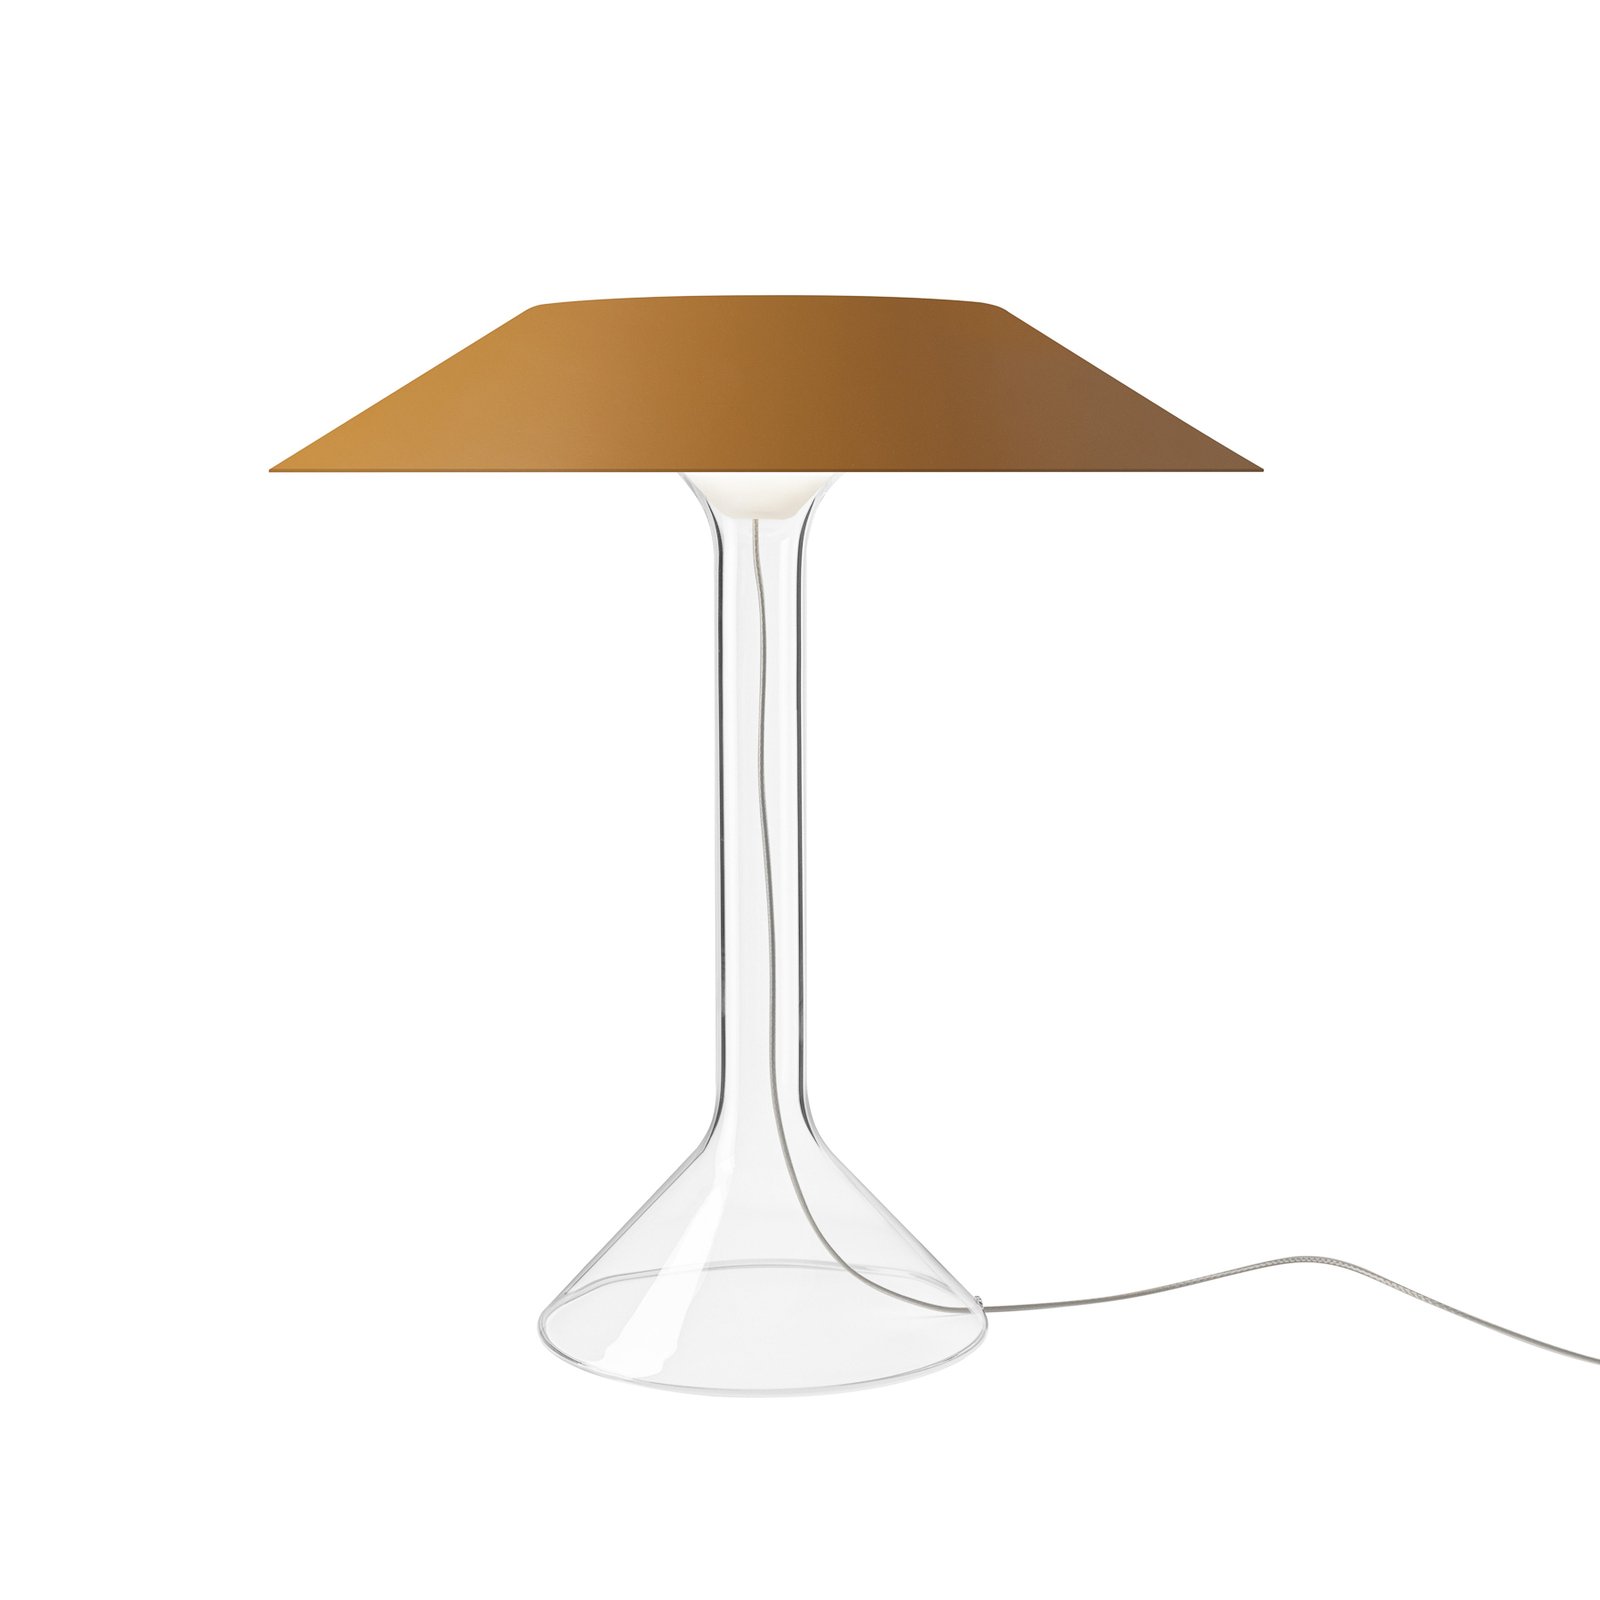 Stolní LED lampa Foscarini Chapeaux M, okrově žlutá